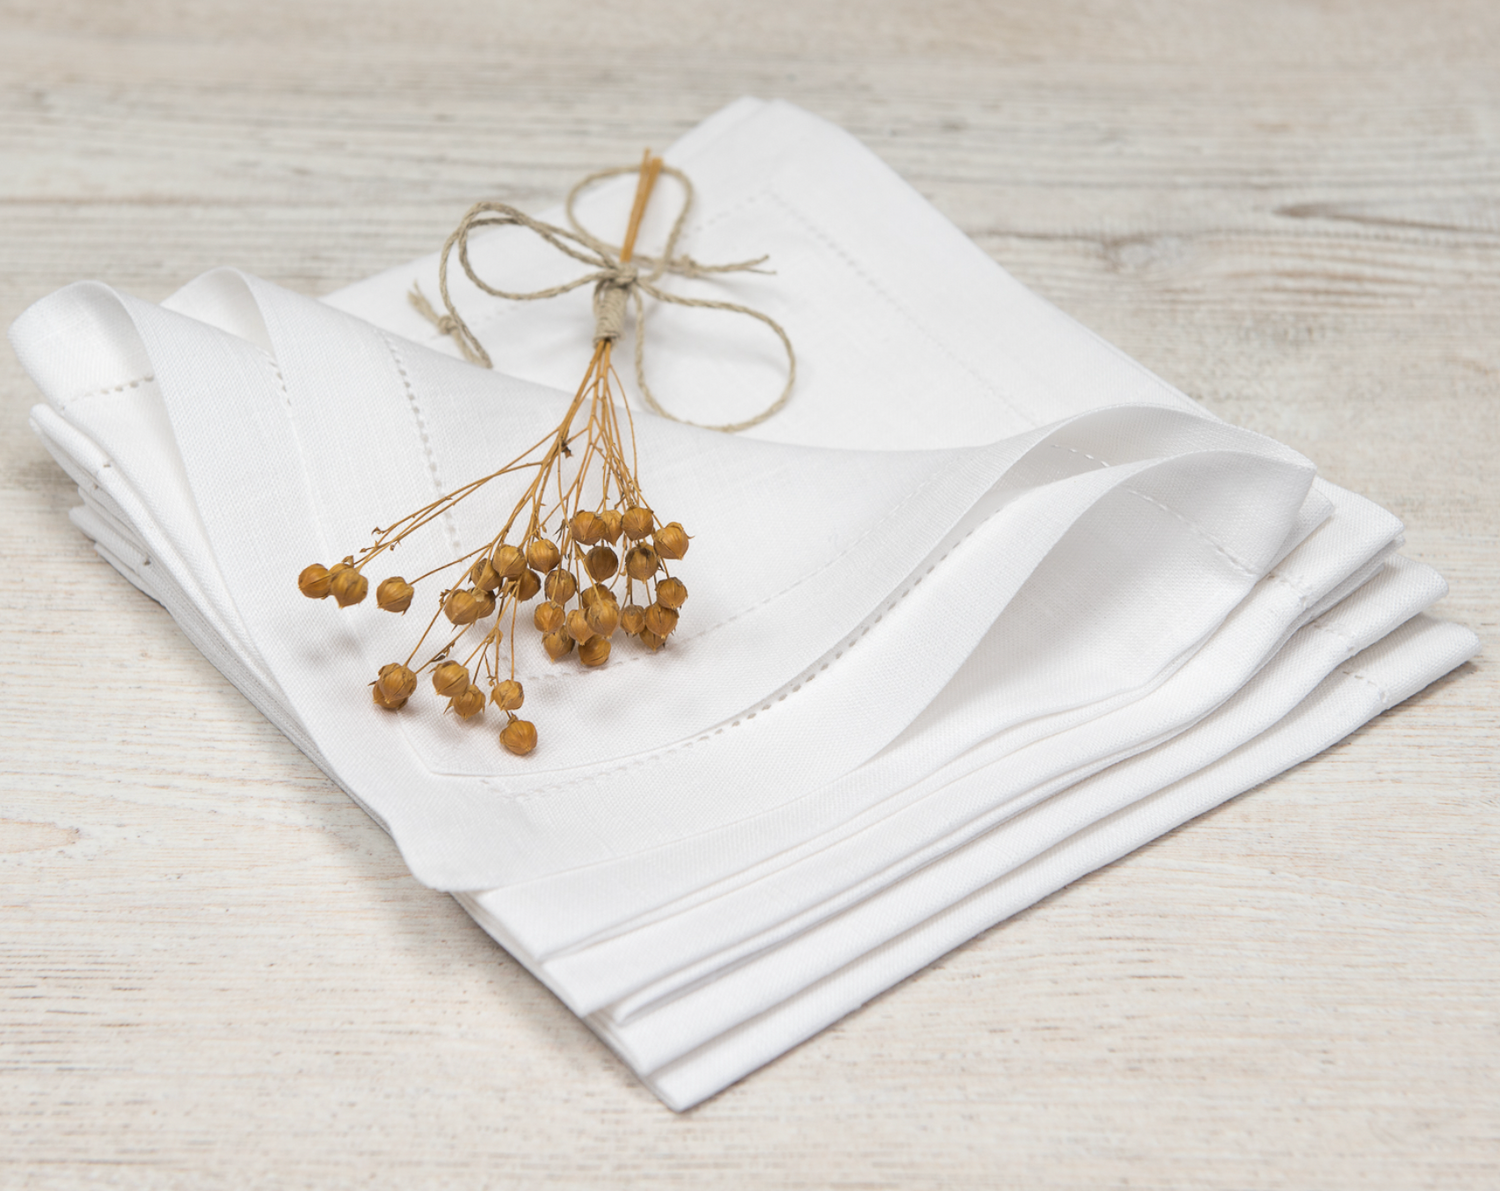 Flertal linneservetter i vit med hålsöm ligger vikta i en hög tillsammans med torkad lin. 